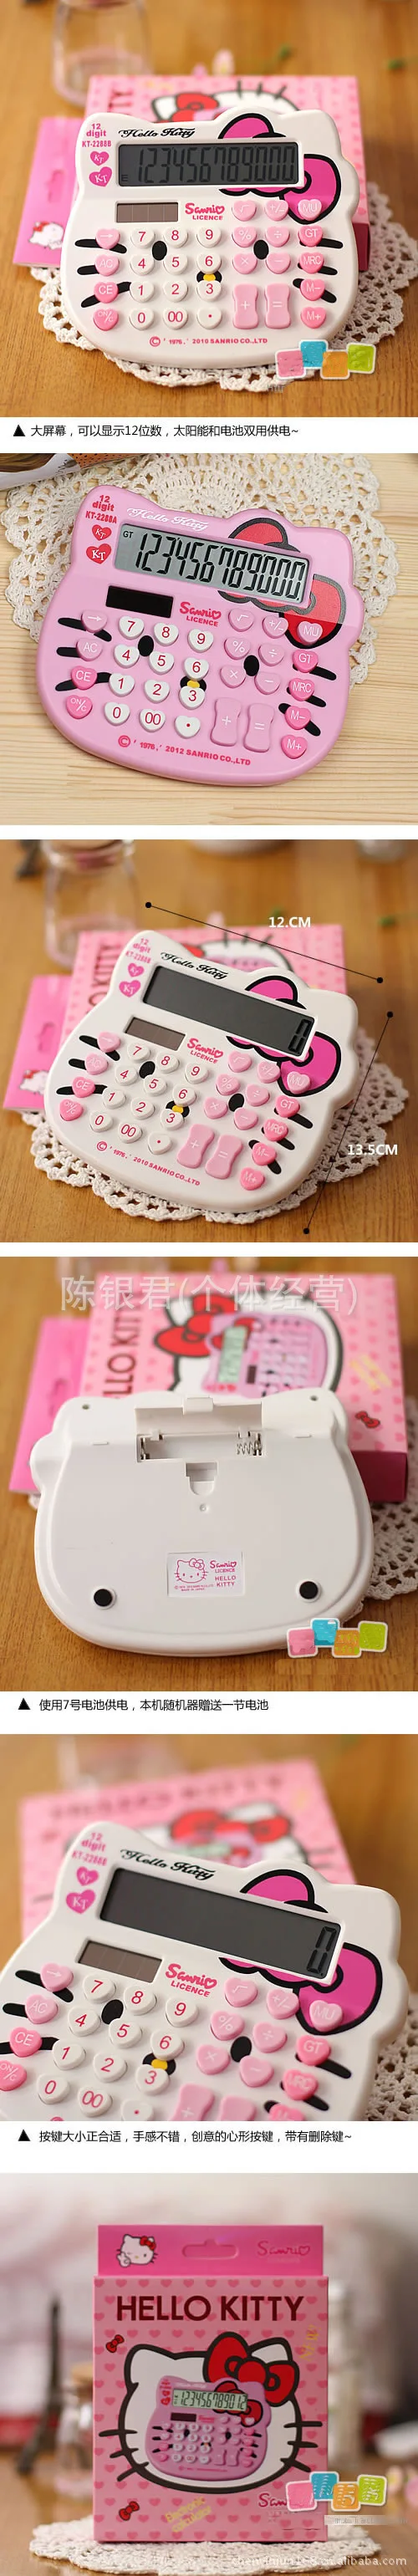 12 цифр дисплей мини карманный розовый милый роскошный hello kitty калькулятор двойной мощности Calculadora Hesap Makinesi Bowknot Kalkulator